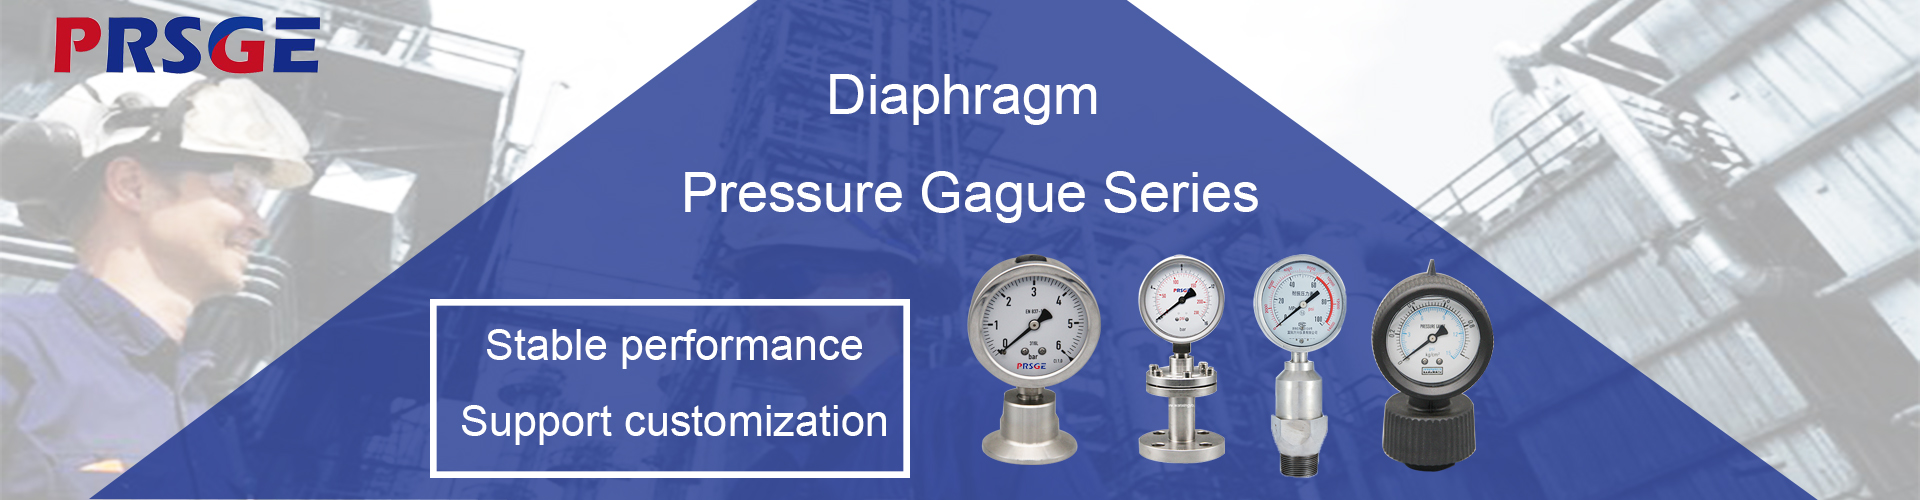 Diaphragm pressure gauge serise